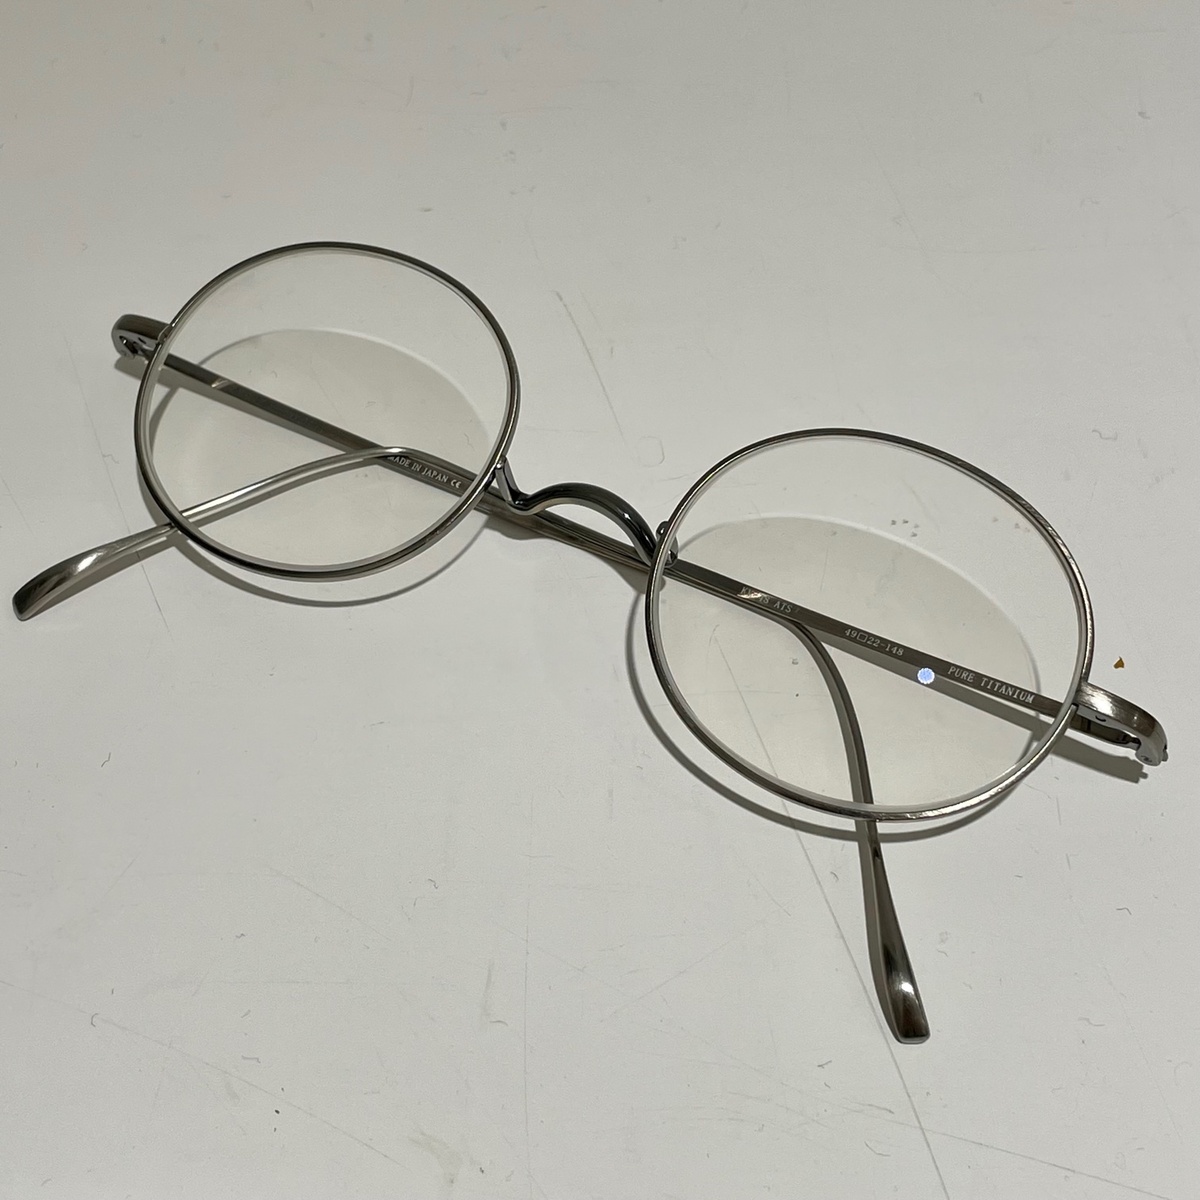 エコスタイル渋谷店で、金子眼鏡のラウンド眼鏡(KV-48 ピュアチタニウム)を買取ました。 買取価格・実績 2021年6月29日公開情報